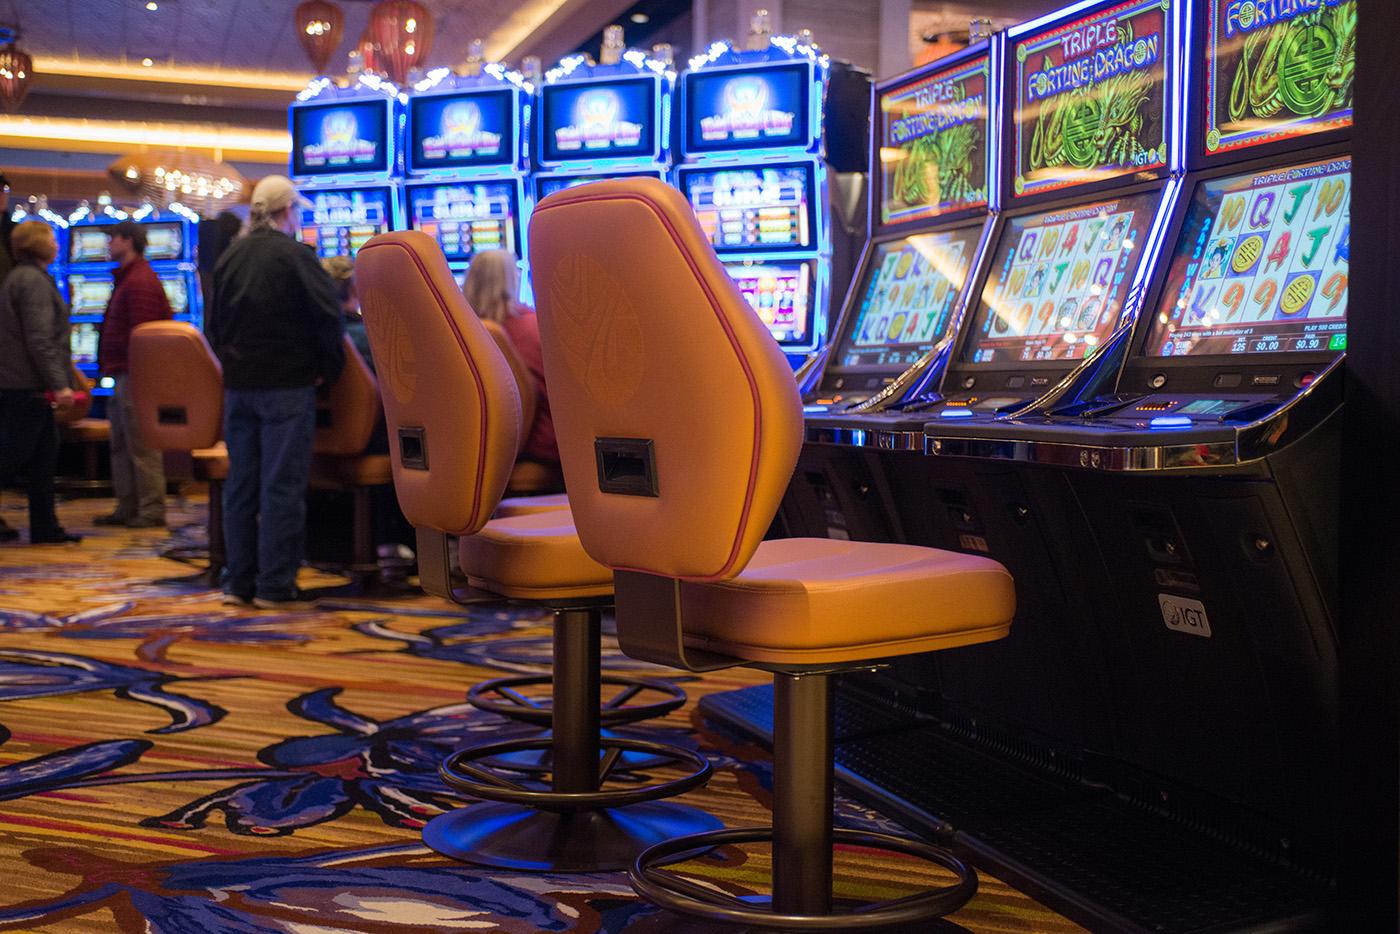 everclear ilani casino